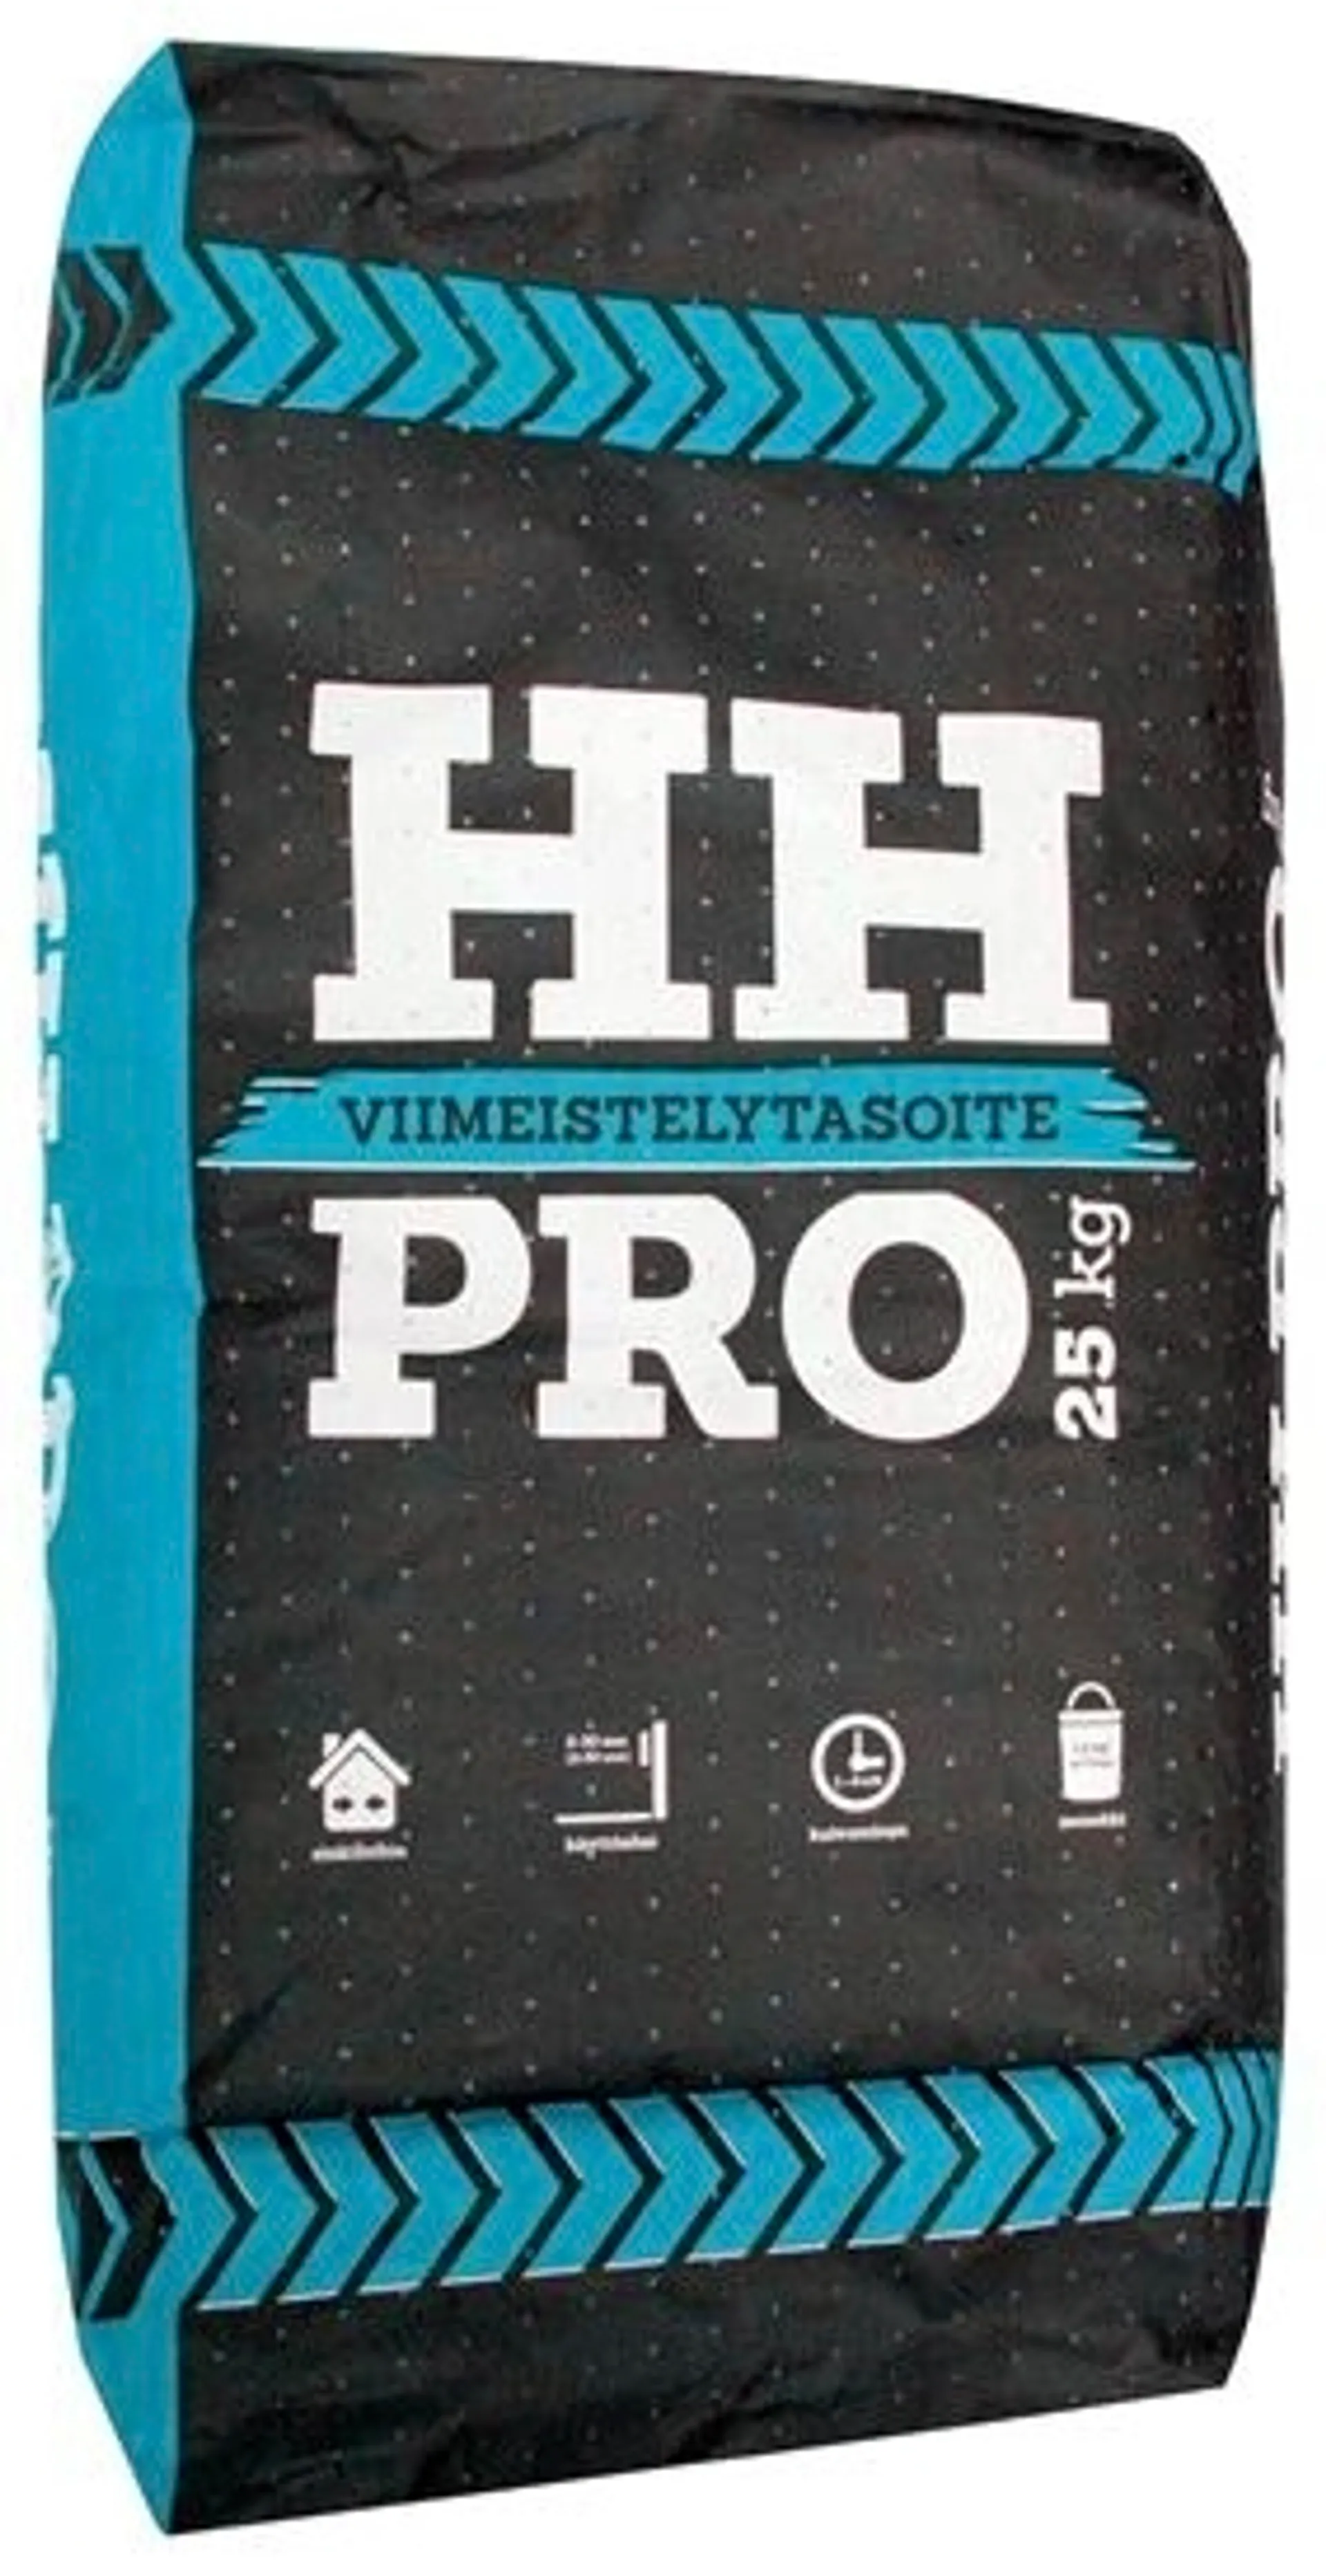 HH Pro viimeistelytasoite käsilevitteinen 25kg 1-10mm